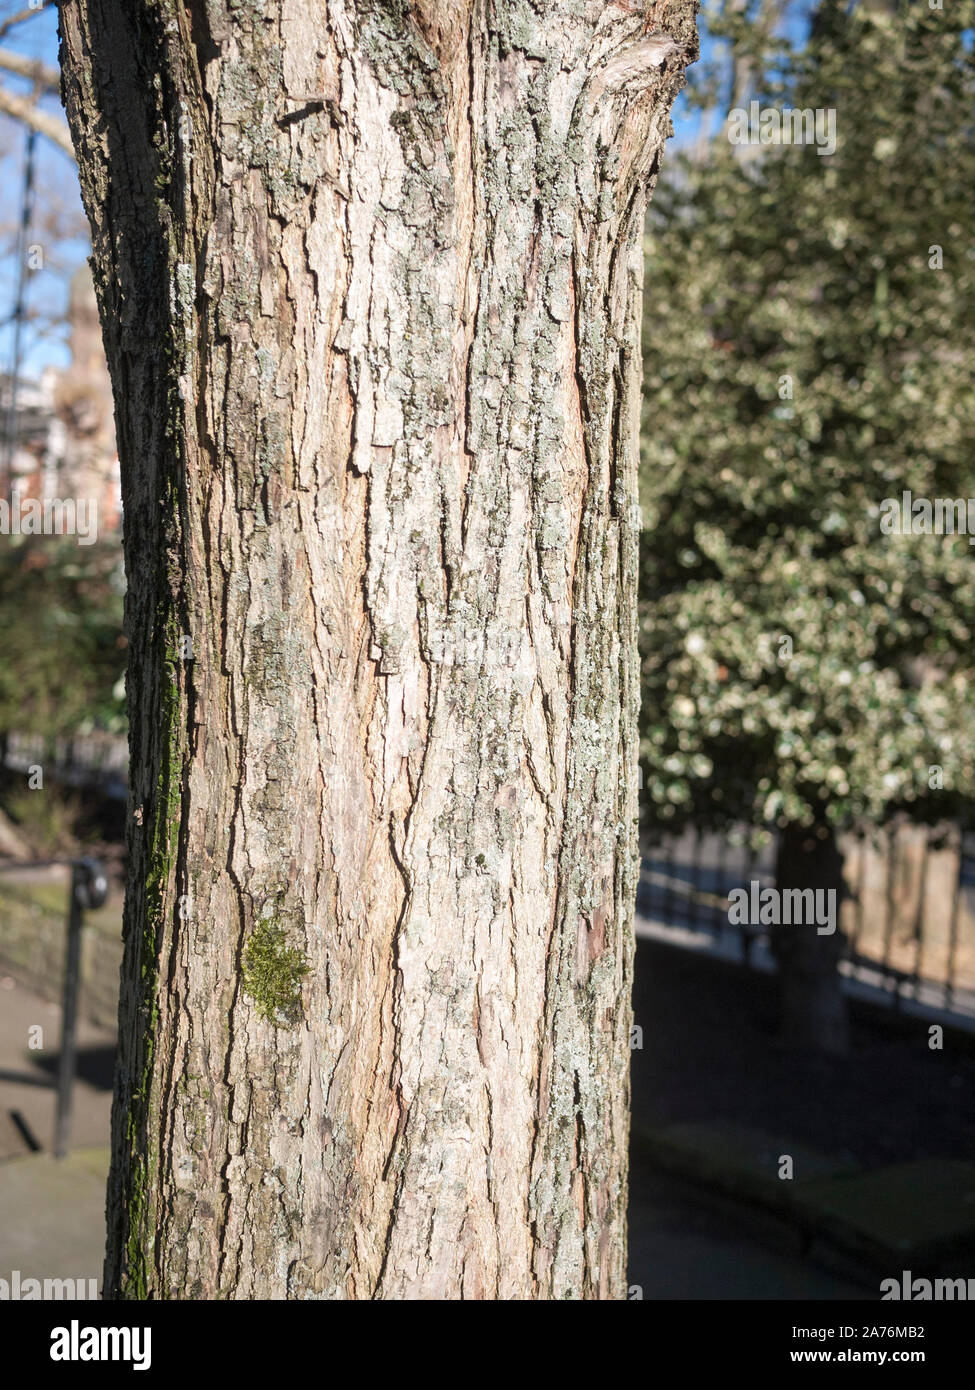 Detalle de un Katsura (Cercidiphyllum japonicum) árbol urbano en invierno, Londres, Reino Unido Foto de stock